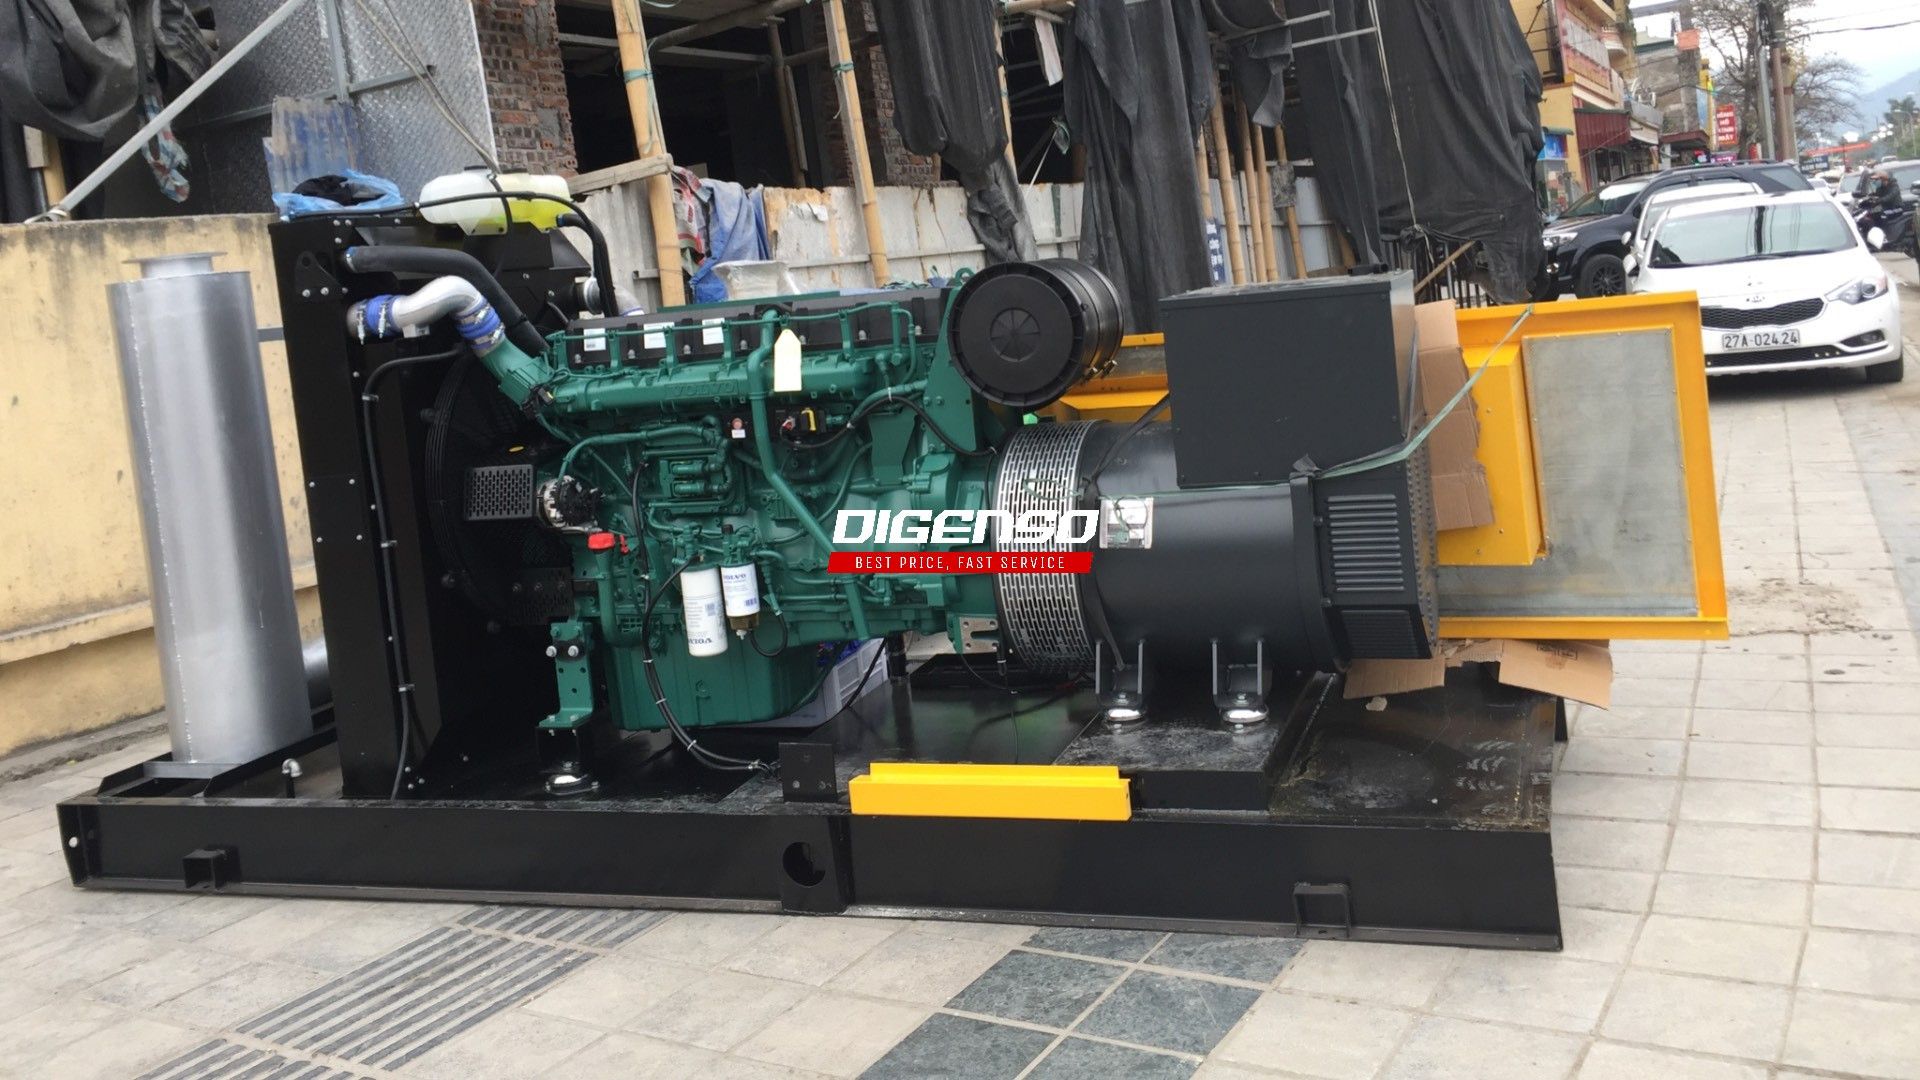 Genuine industrial diesel generators from G7